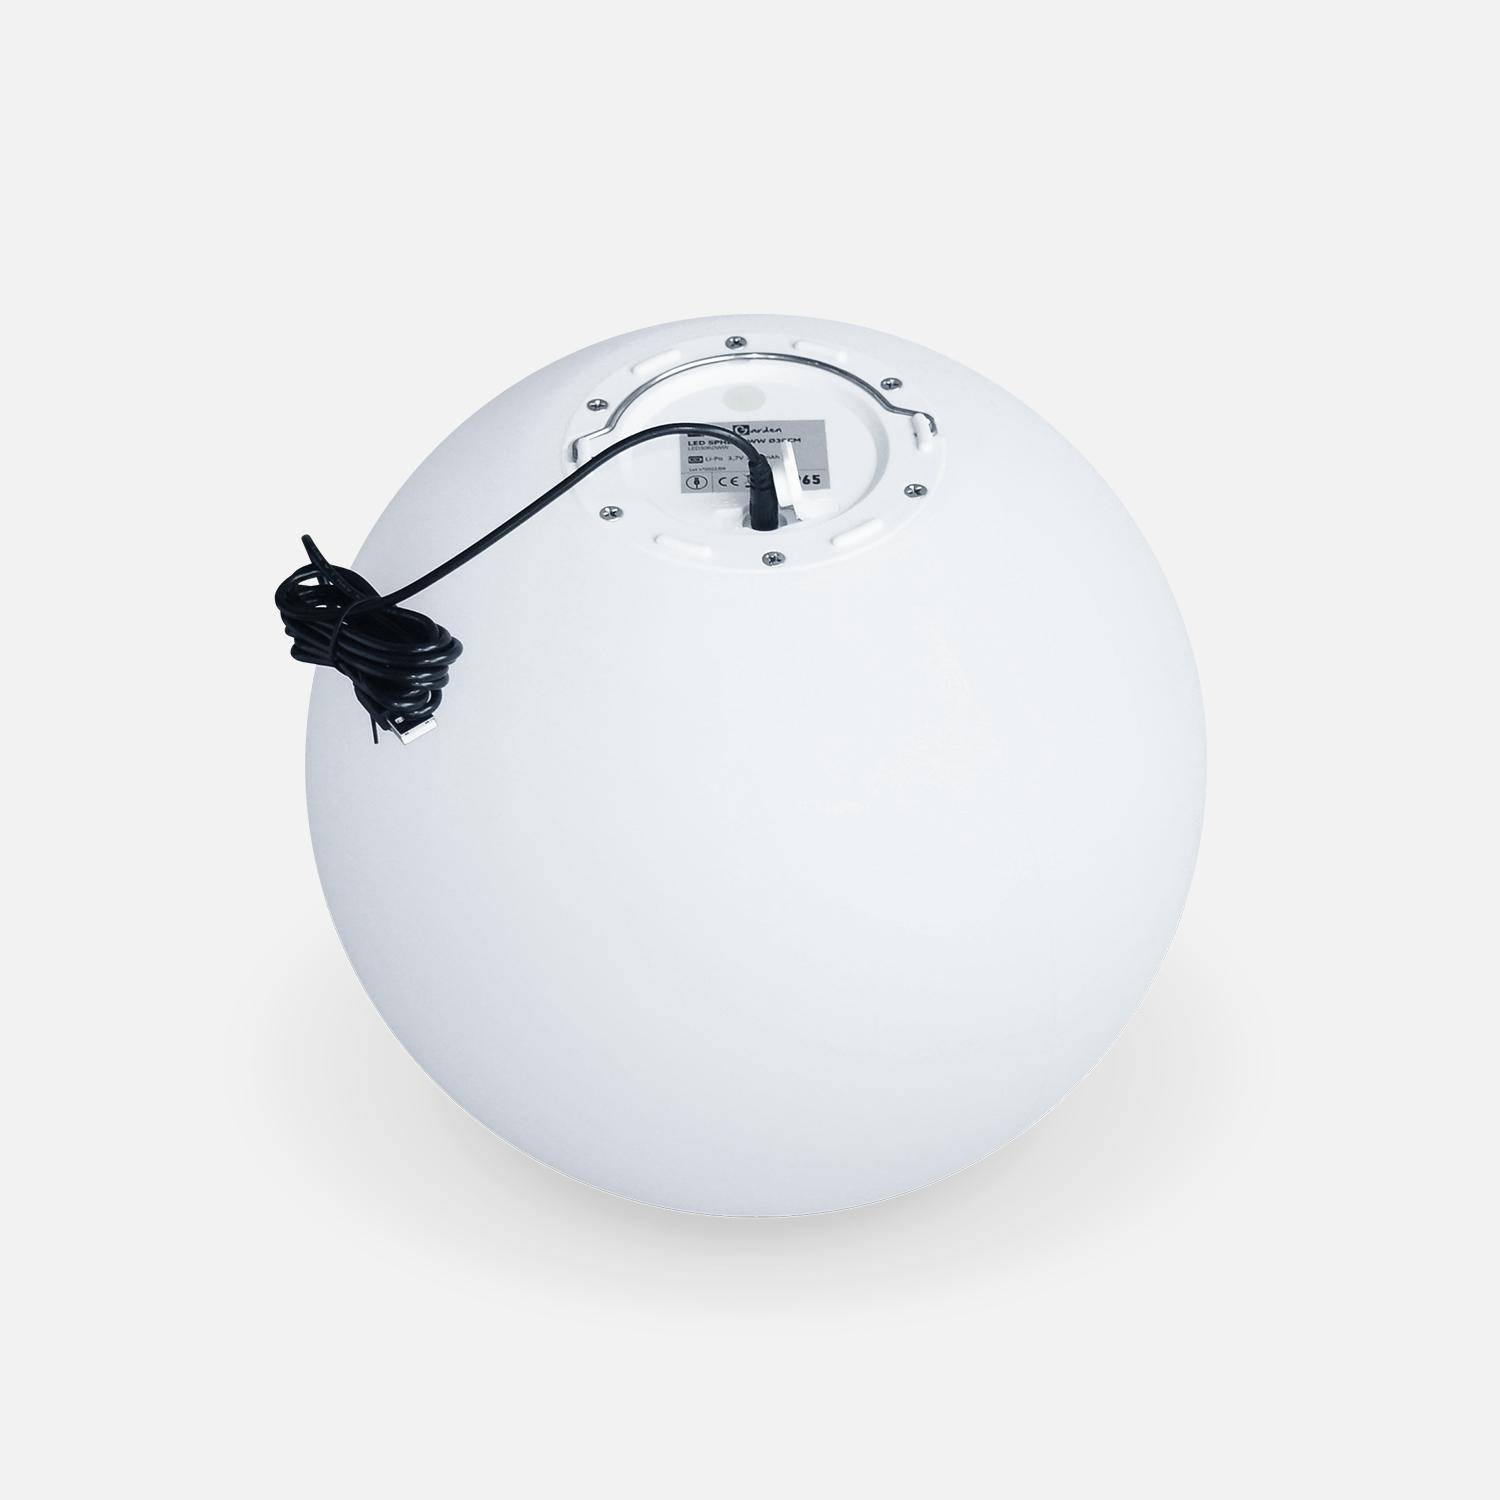 LED-Kugel 30cm - Dekorative Leuchtkugel, Ø30cm, warmweiß, mit Fernbedienung Photo4